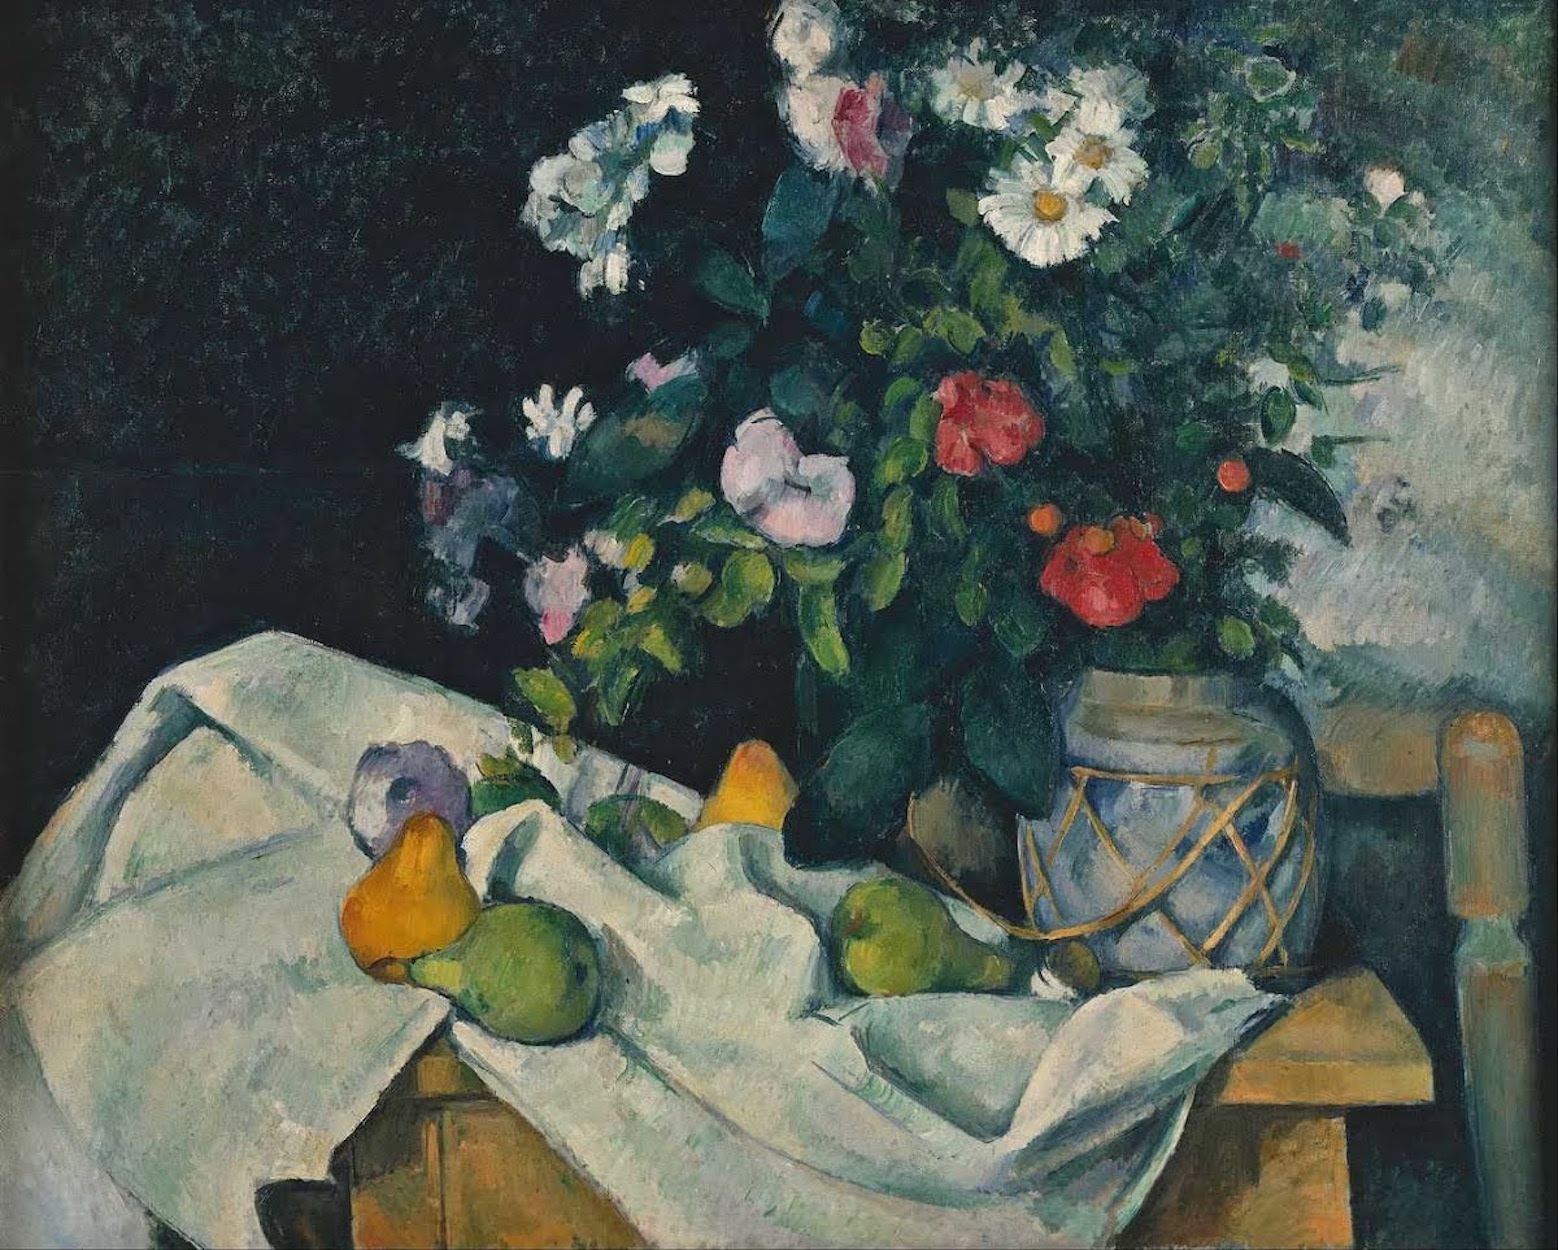 Bodegón con flores y fruta by Paul Cézanne - c. 1890 - 82,0 x 65,5 cm Antigua Galería Nacional de Berlín